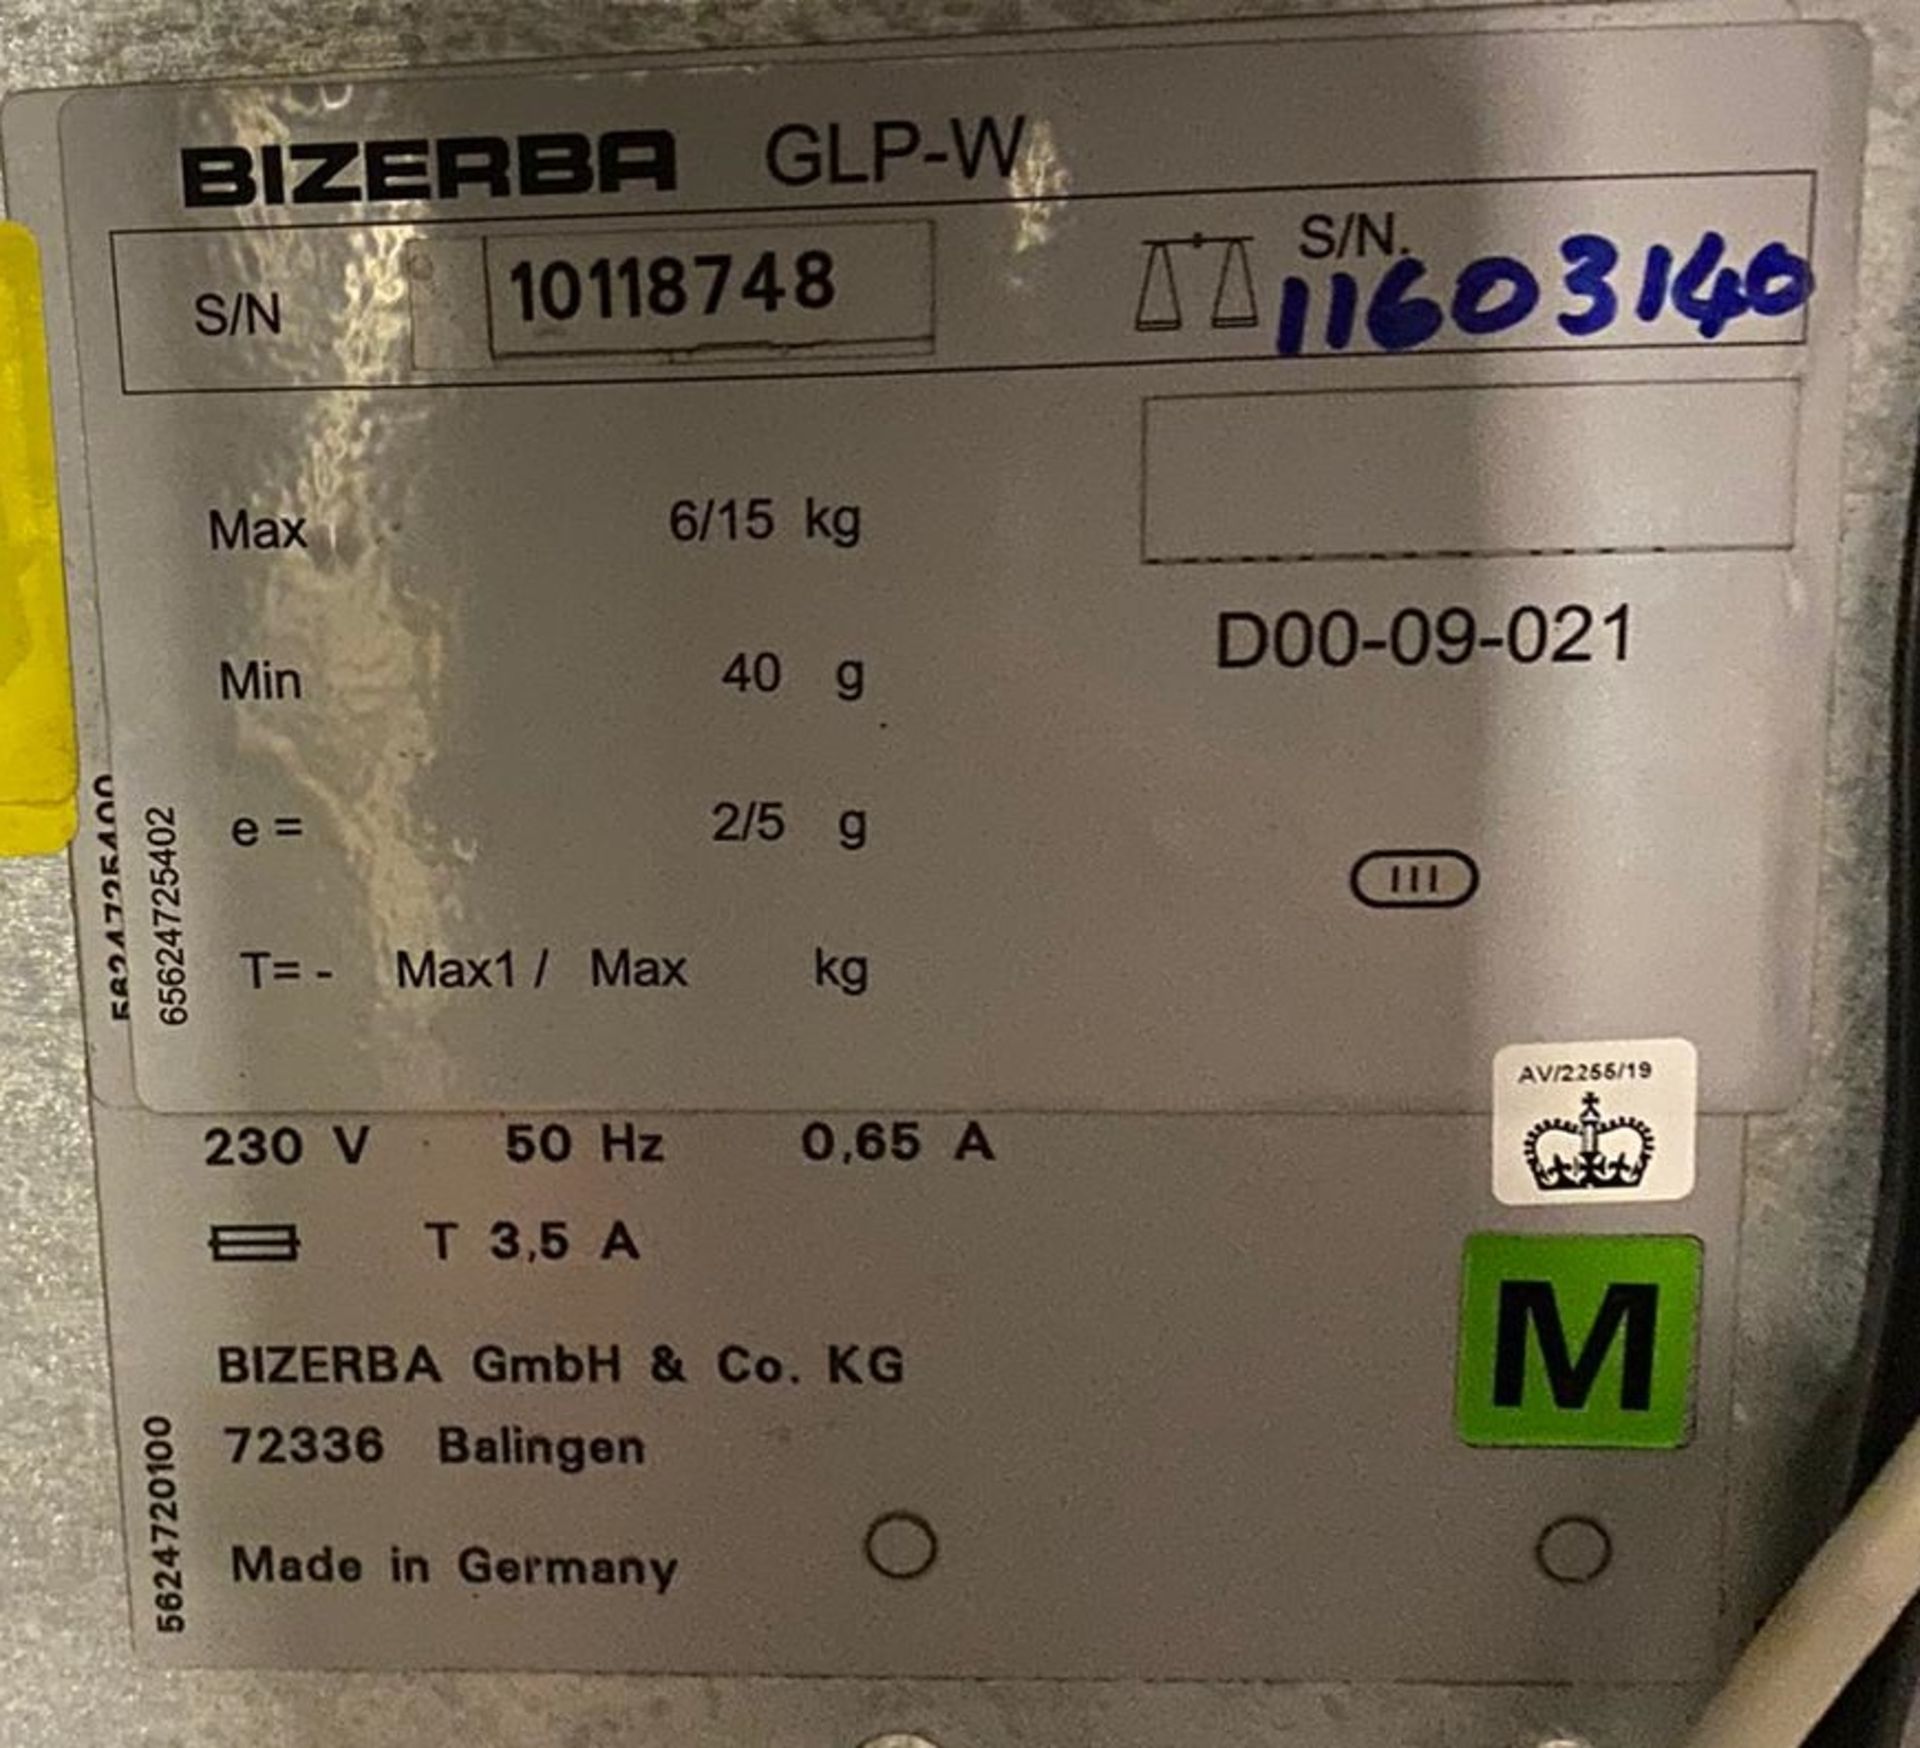 1 x Bizerba GT240 Retail Label printer - Used Conditon - Location: Altrincham WA14 - - Image 2 of 8